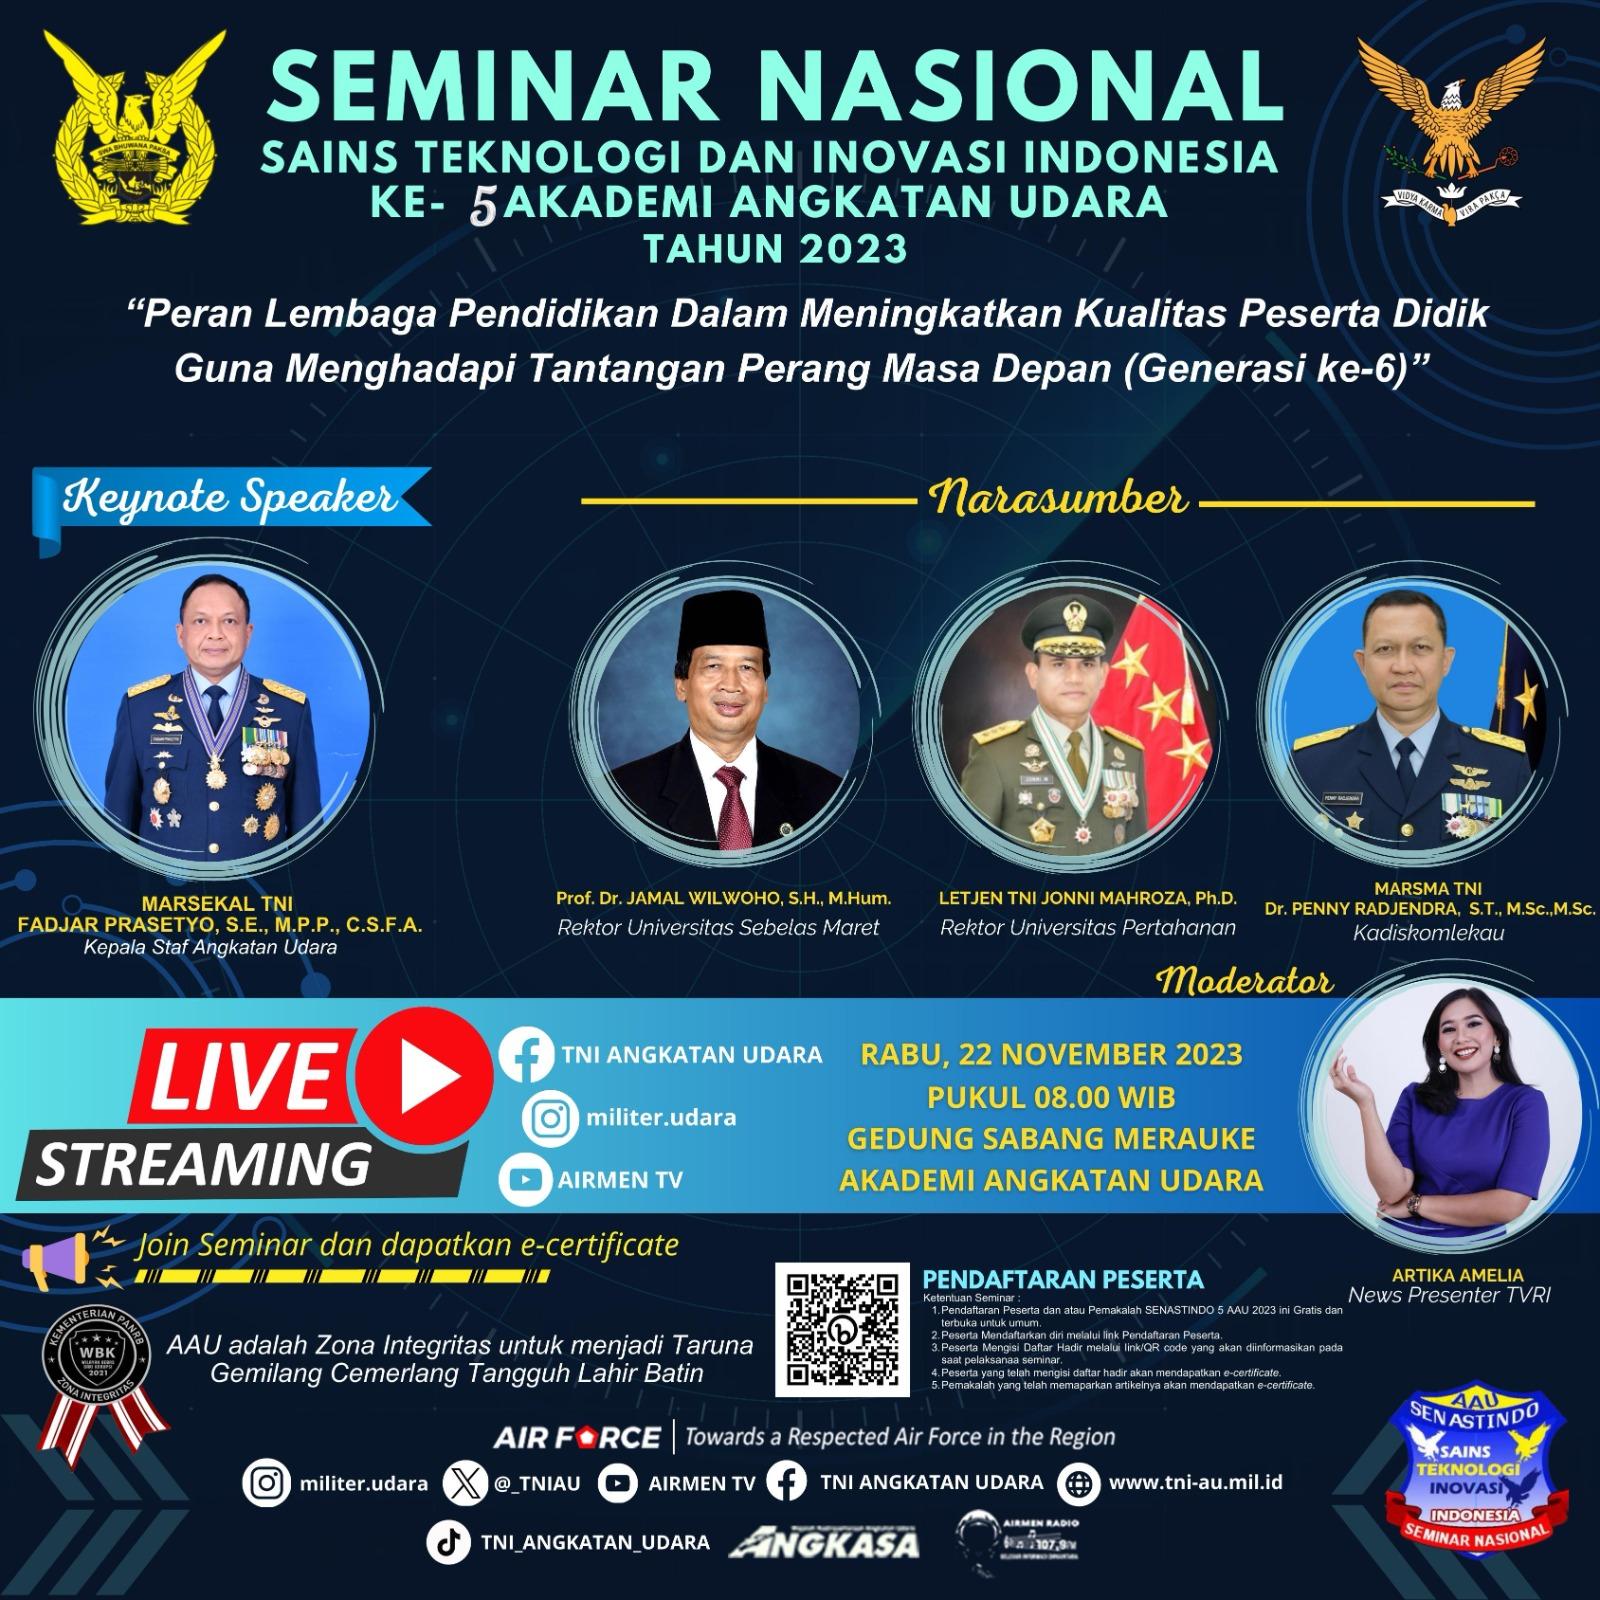 SAKSIKANLAH!!! Seminar Nasional Sains Teknologi dan Inovasi Indonesia (SENASTINDO) Ke- 5 Akademi Angkatan Udara